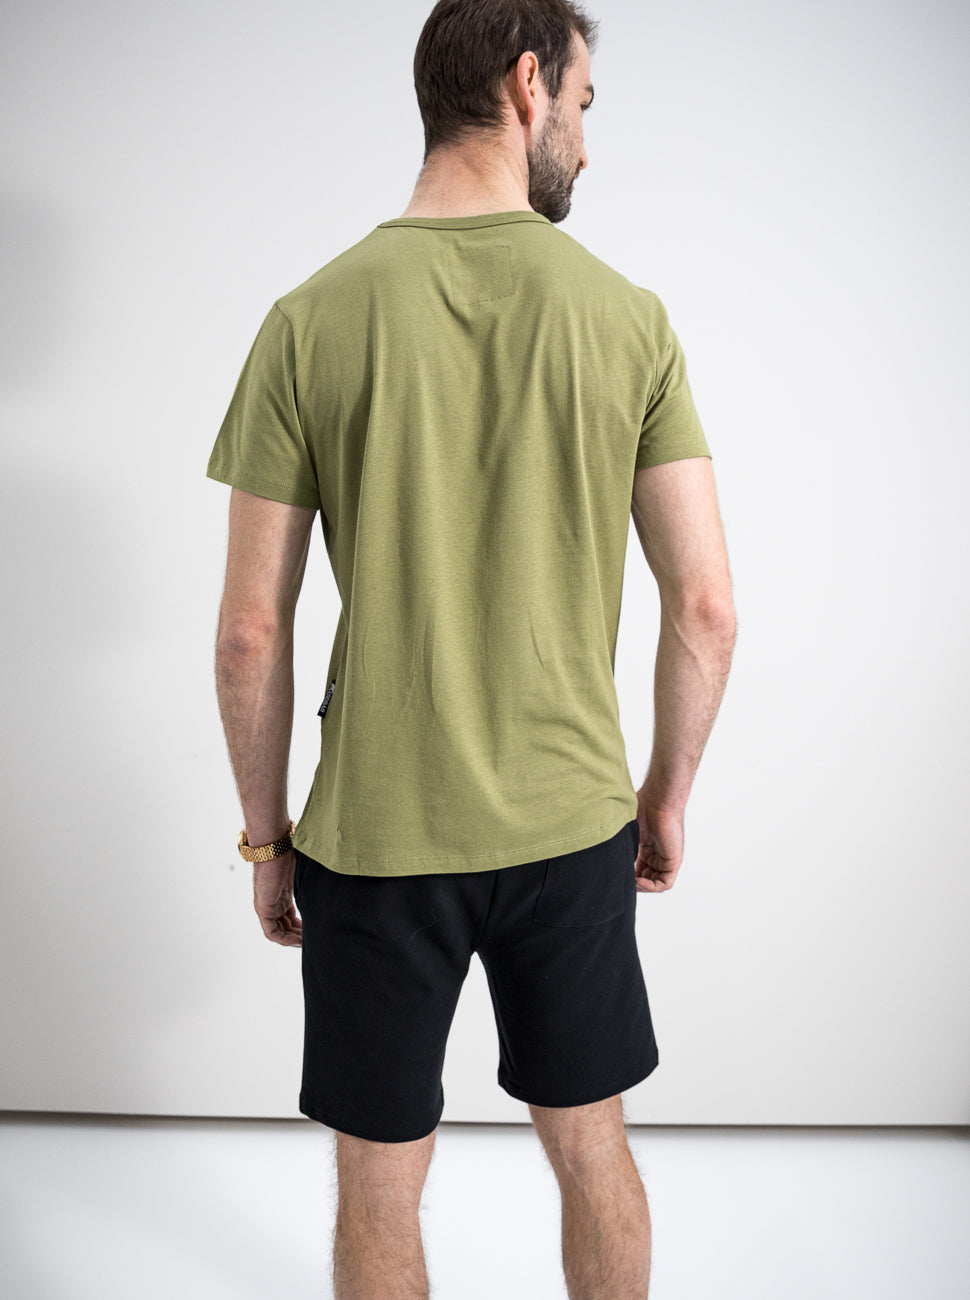 Herren T-Shirt BESTÄRKE ANDERE (olivgrün)